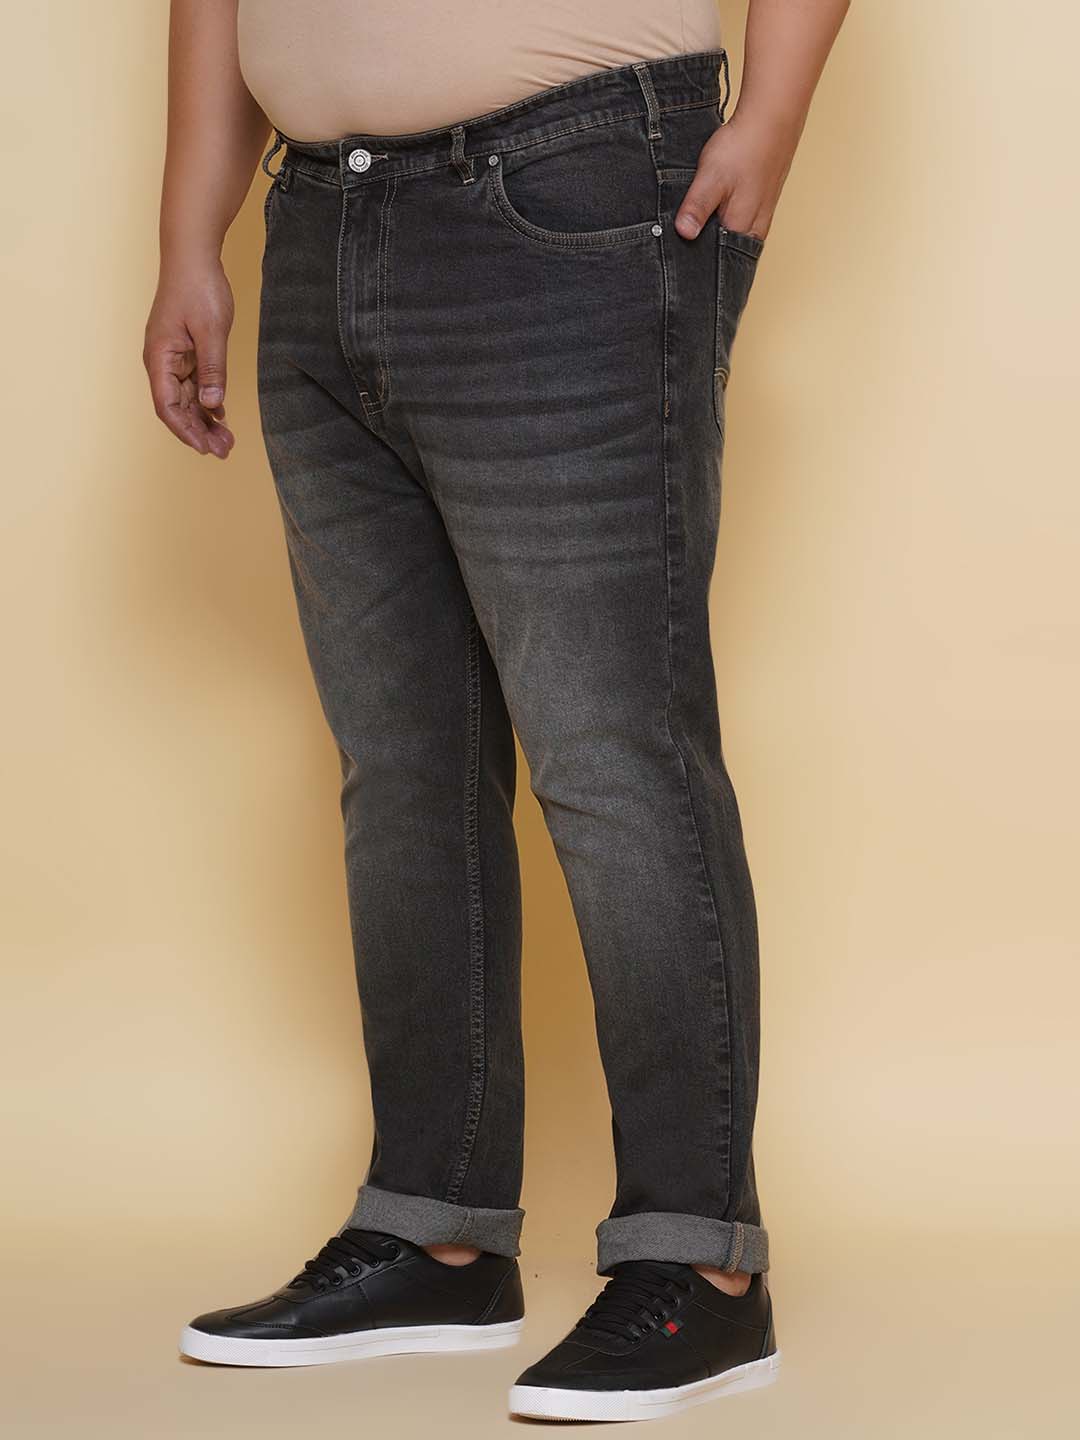 bottomwear/jeans/EJPJ25135/ejpj25135-4.jpg